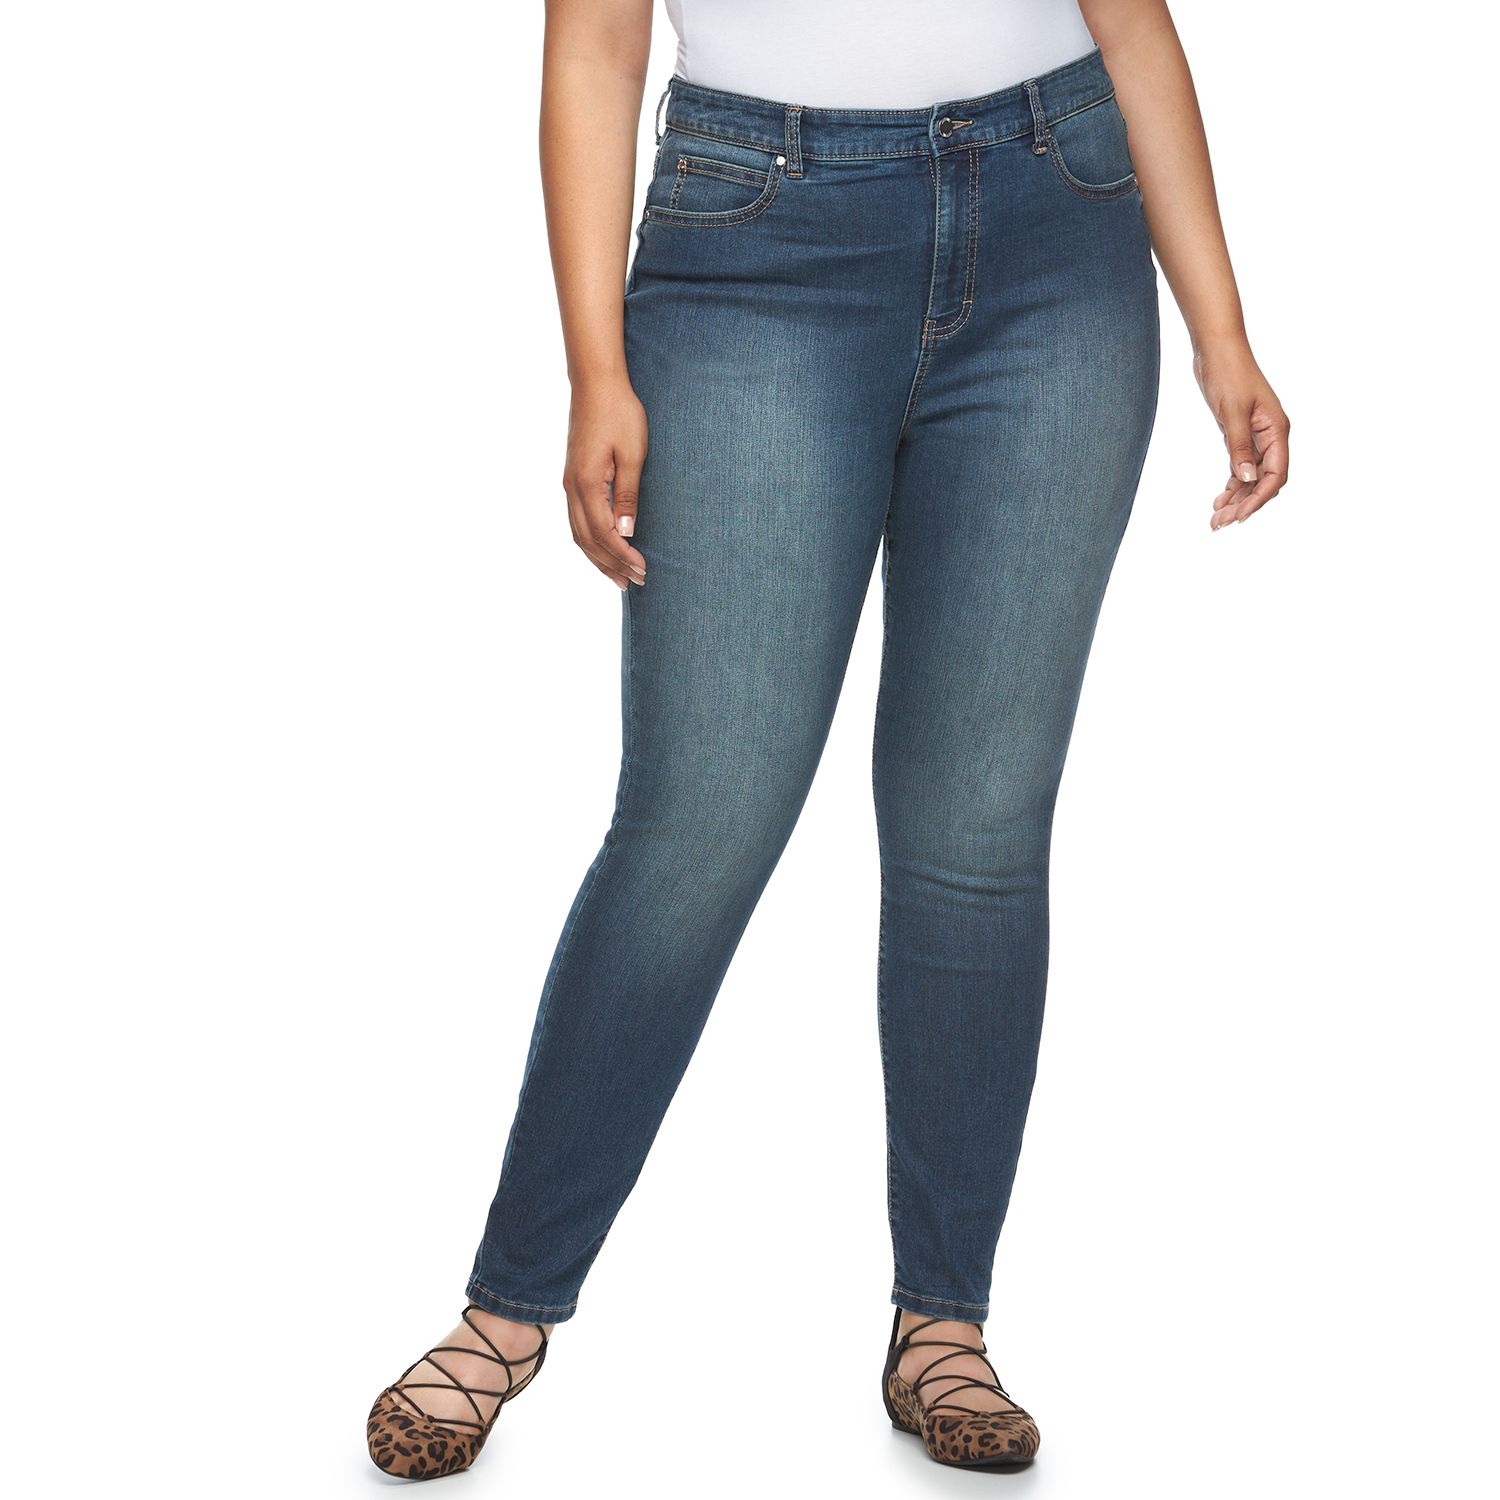 jennifer lopez skinny jeans plus size